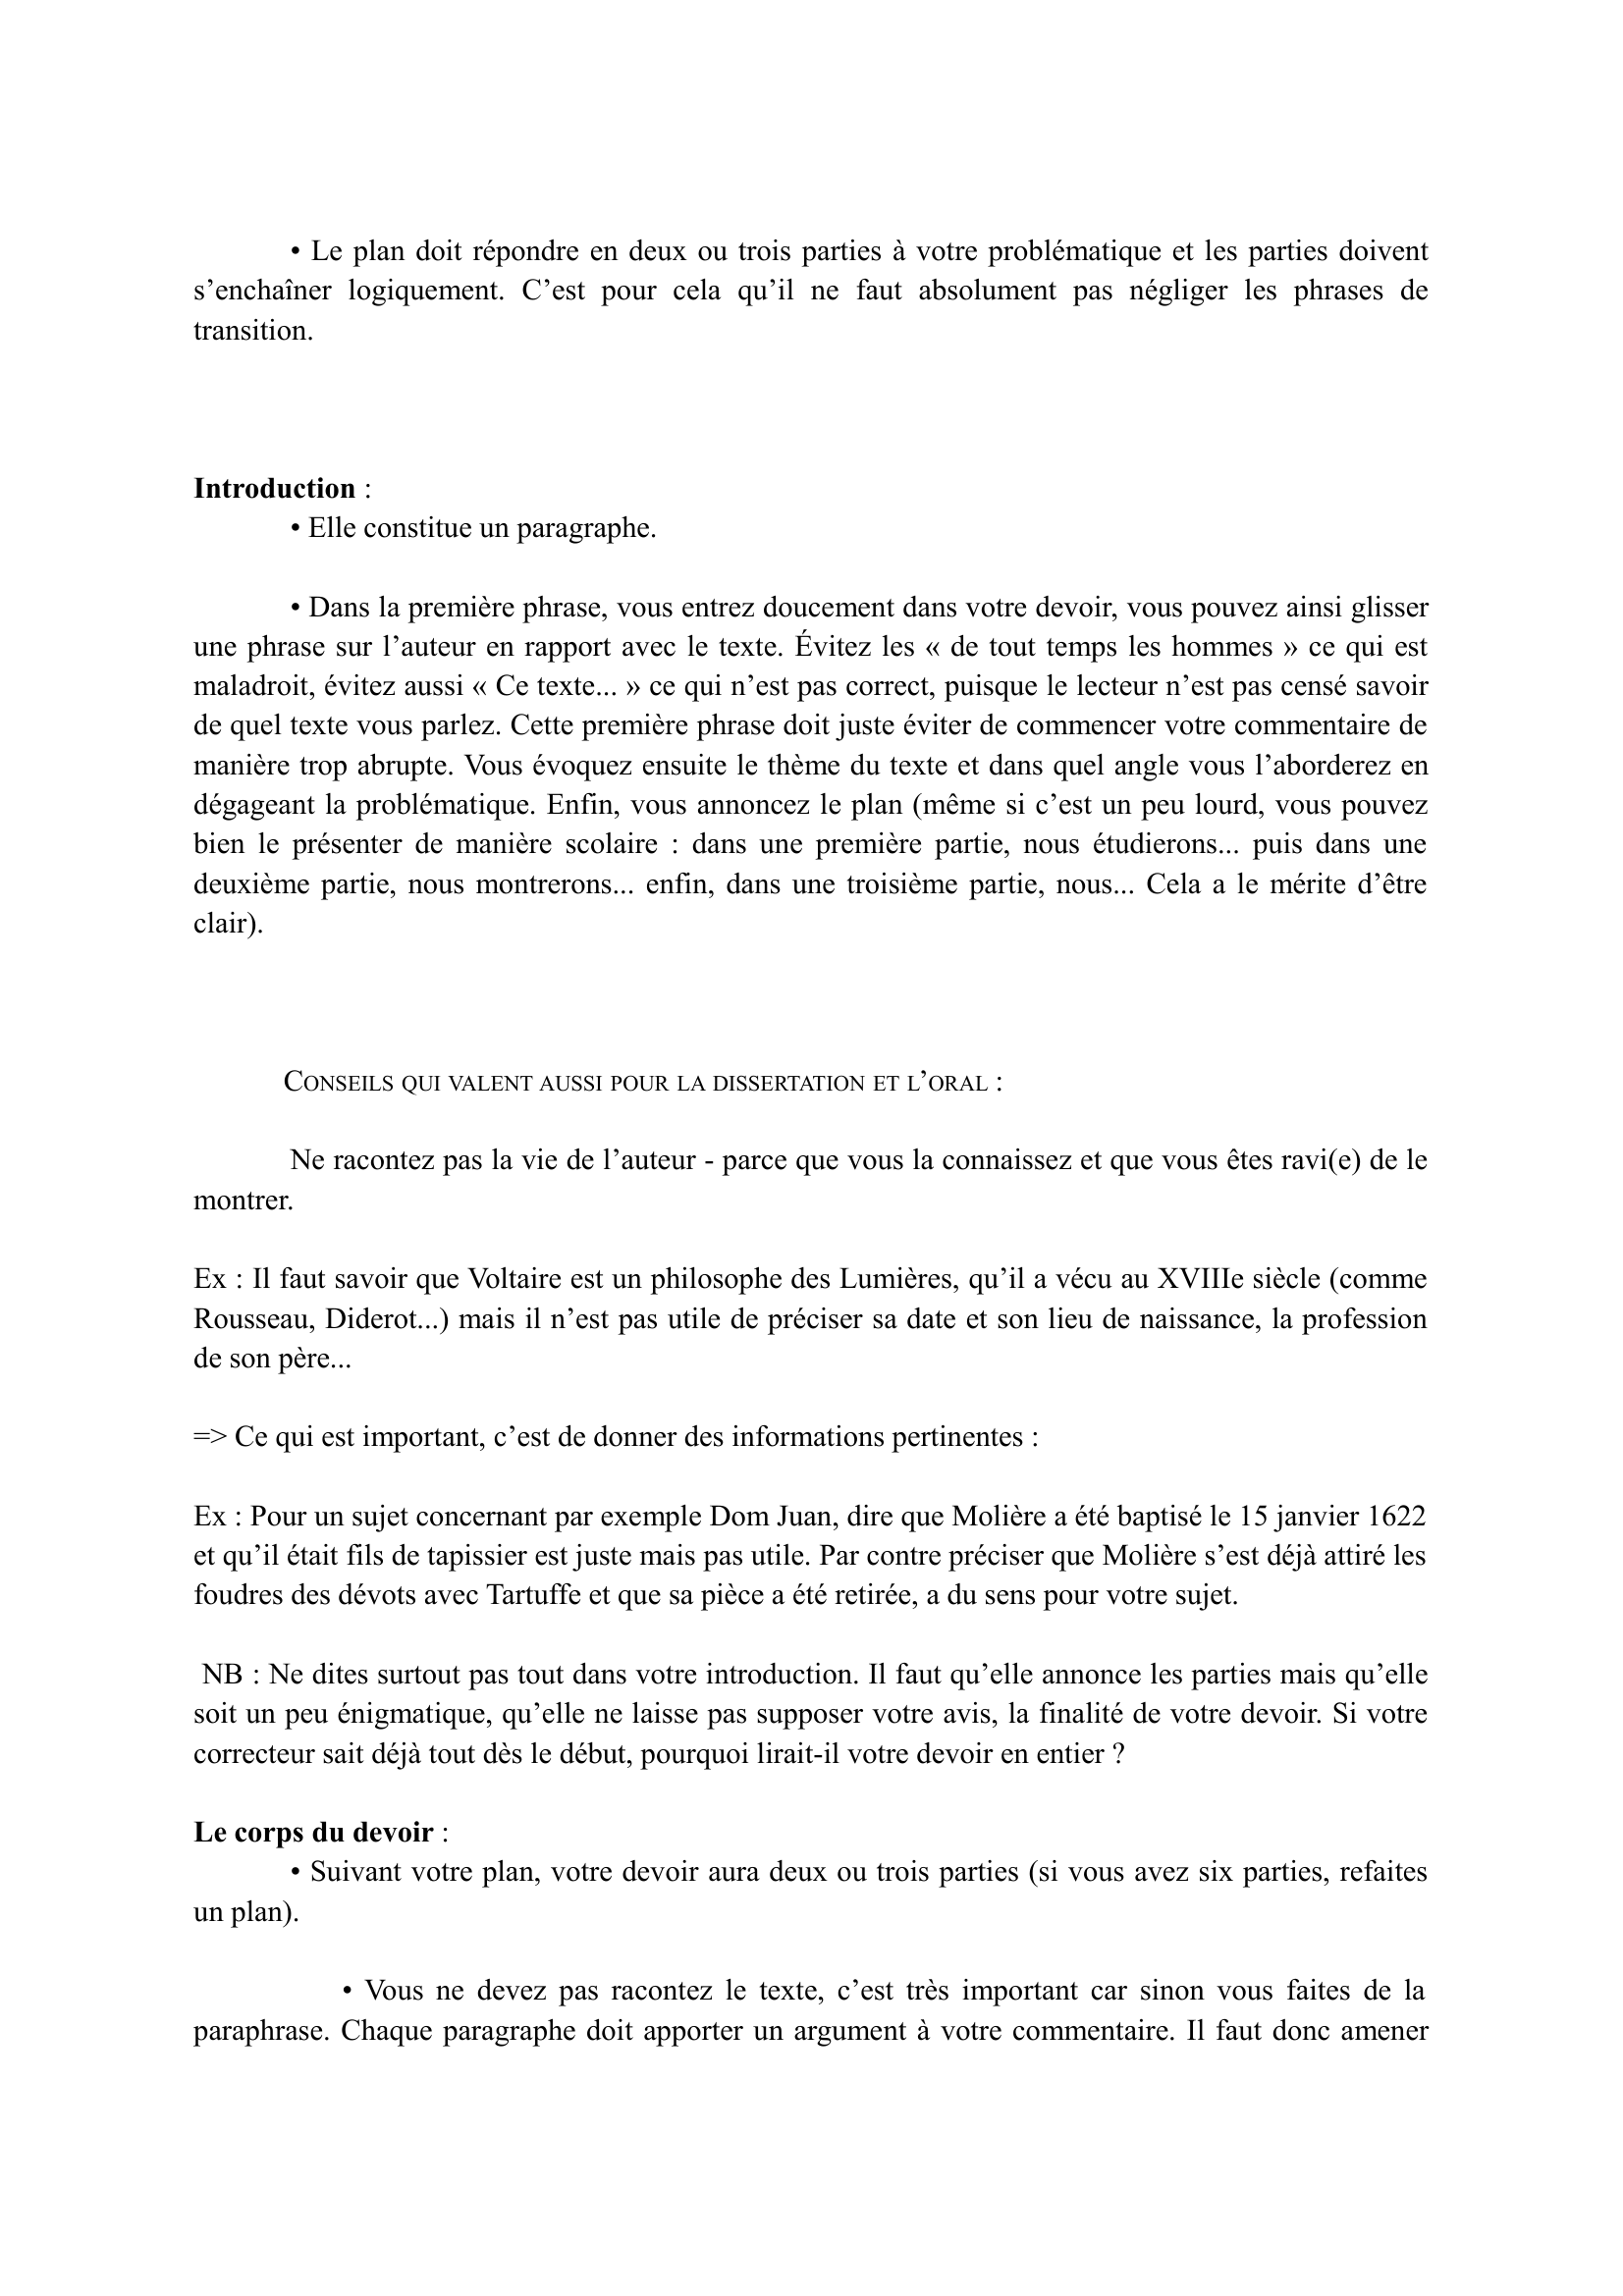 Prévisualisation du document MÉTHODOLOGIE 
COMMENTAIRE COMPOSÉ 
 
- BAC DE FRANÇAIS 
 
Le